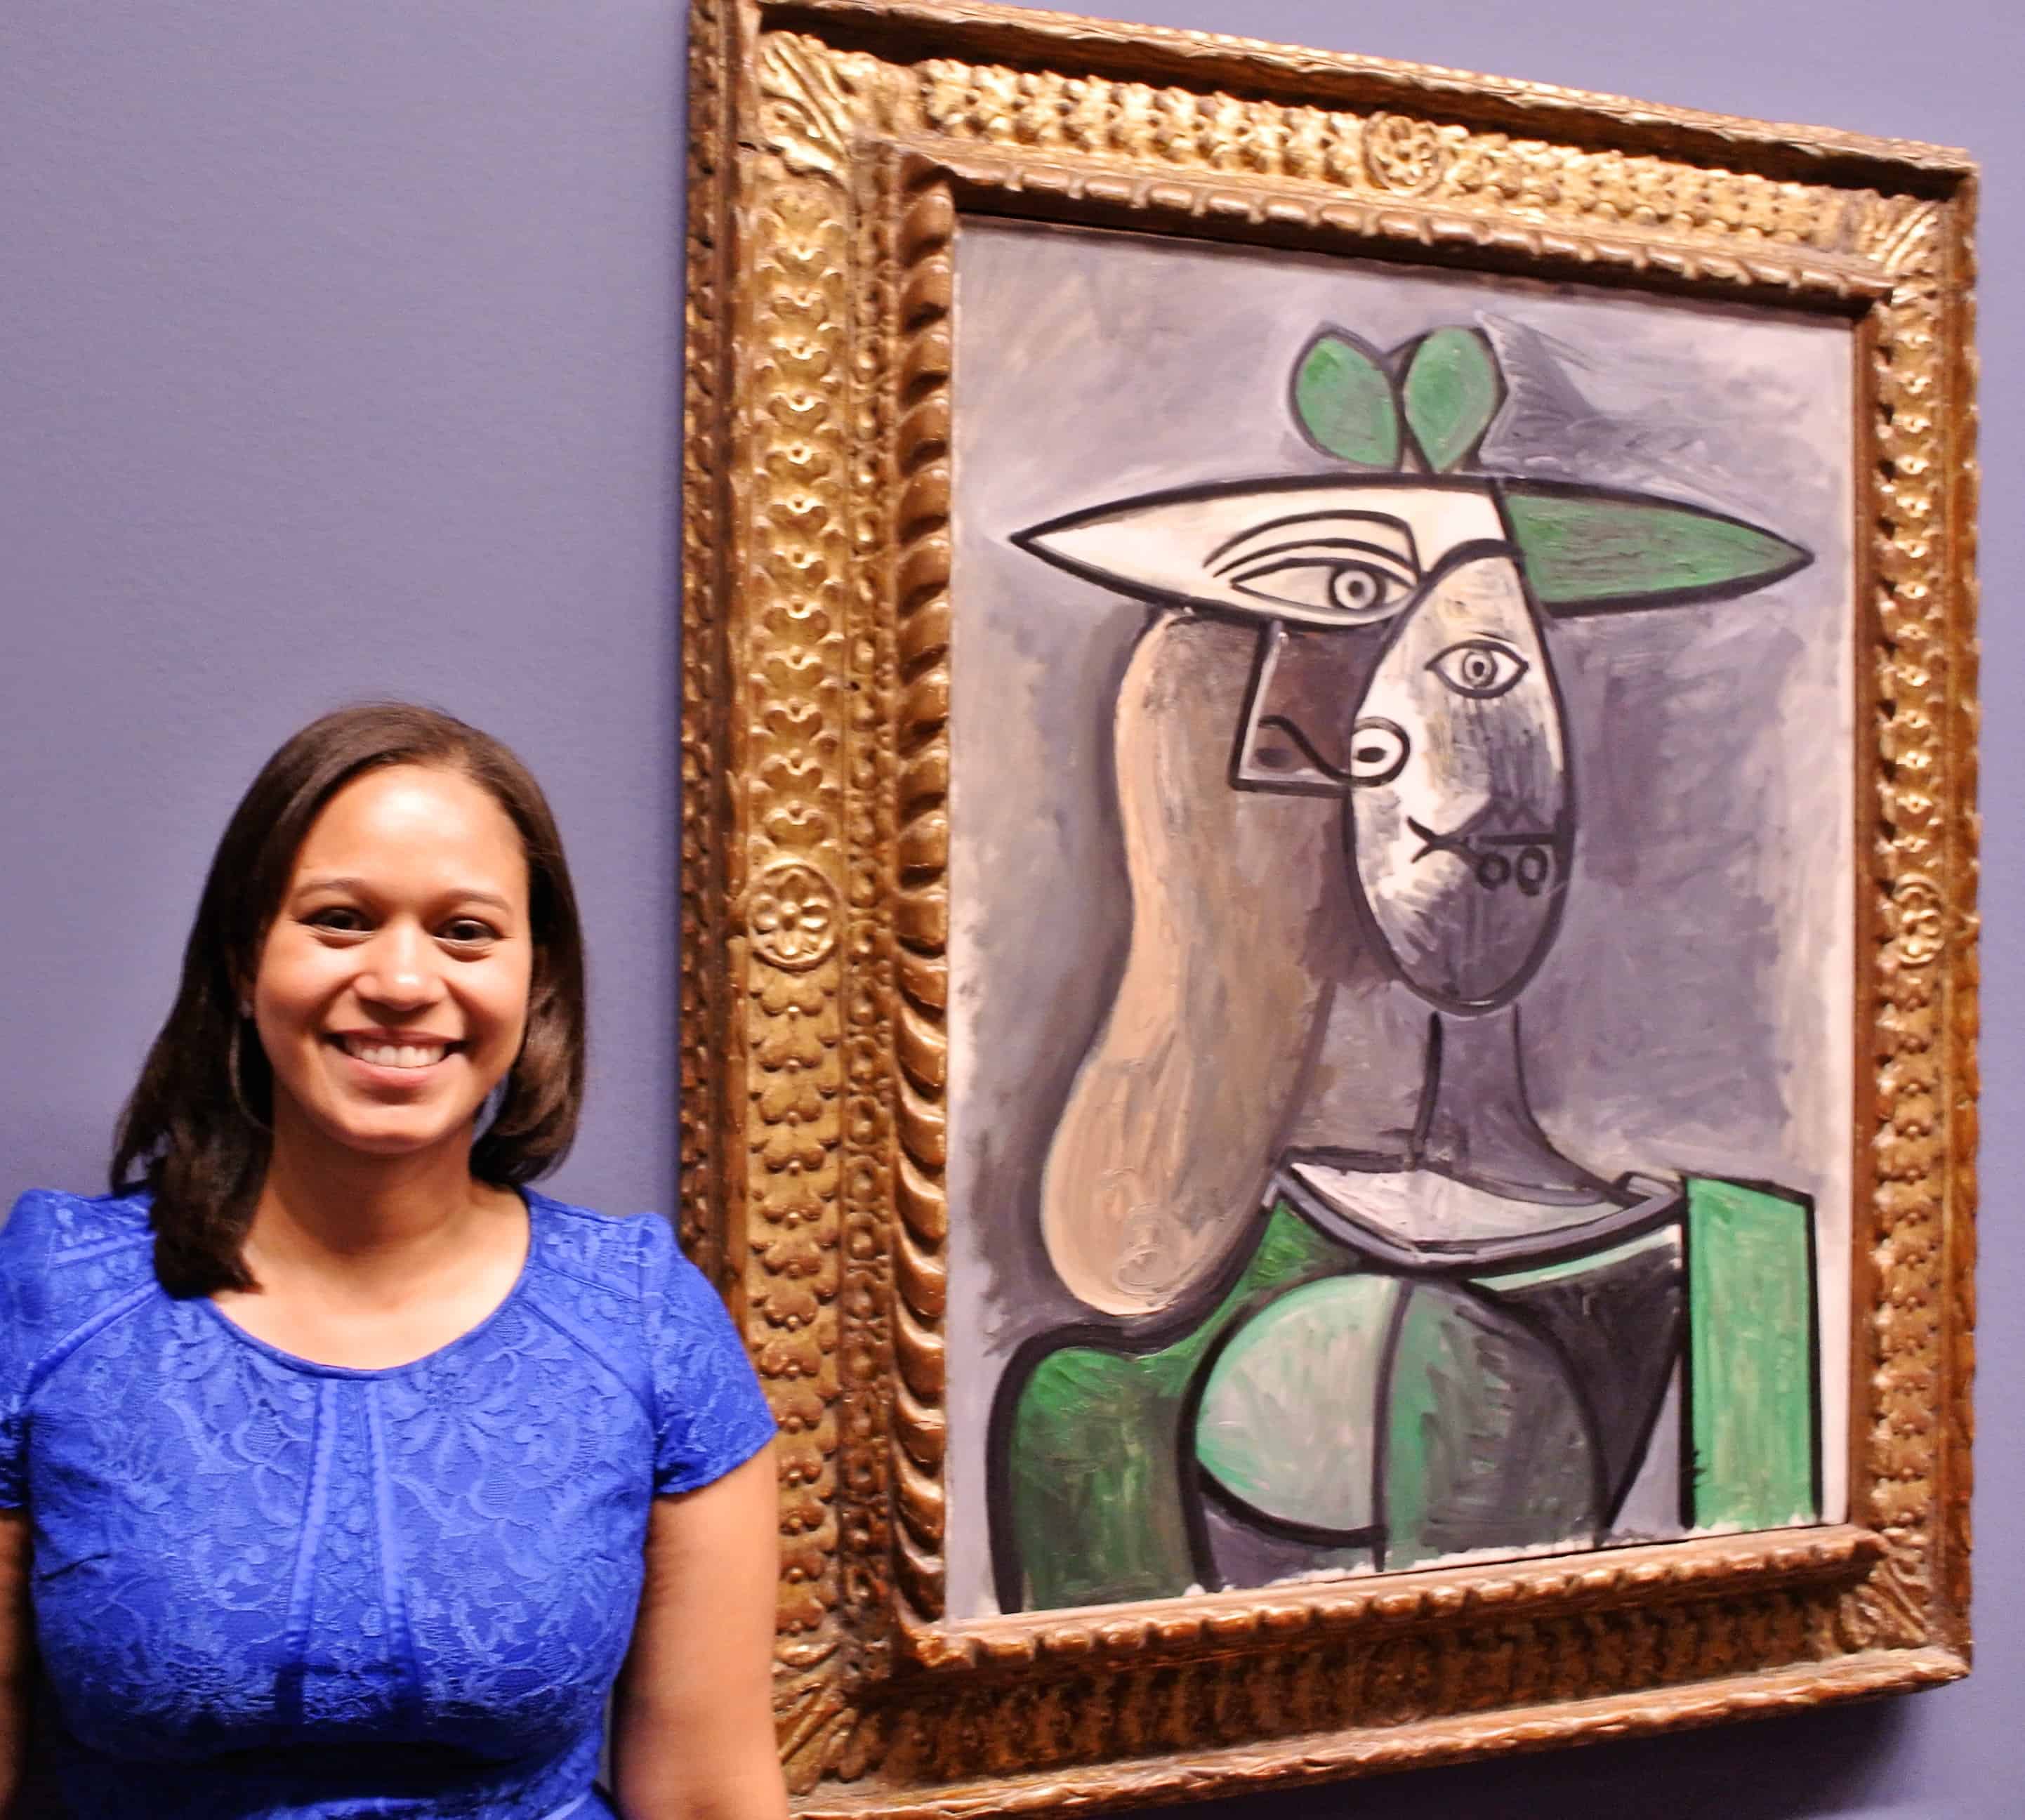 Frau mit grünem Hut - Pablo Picasso - 1947